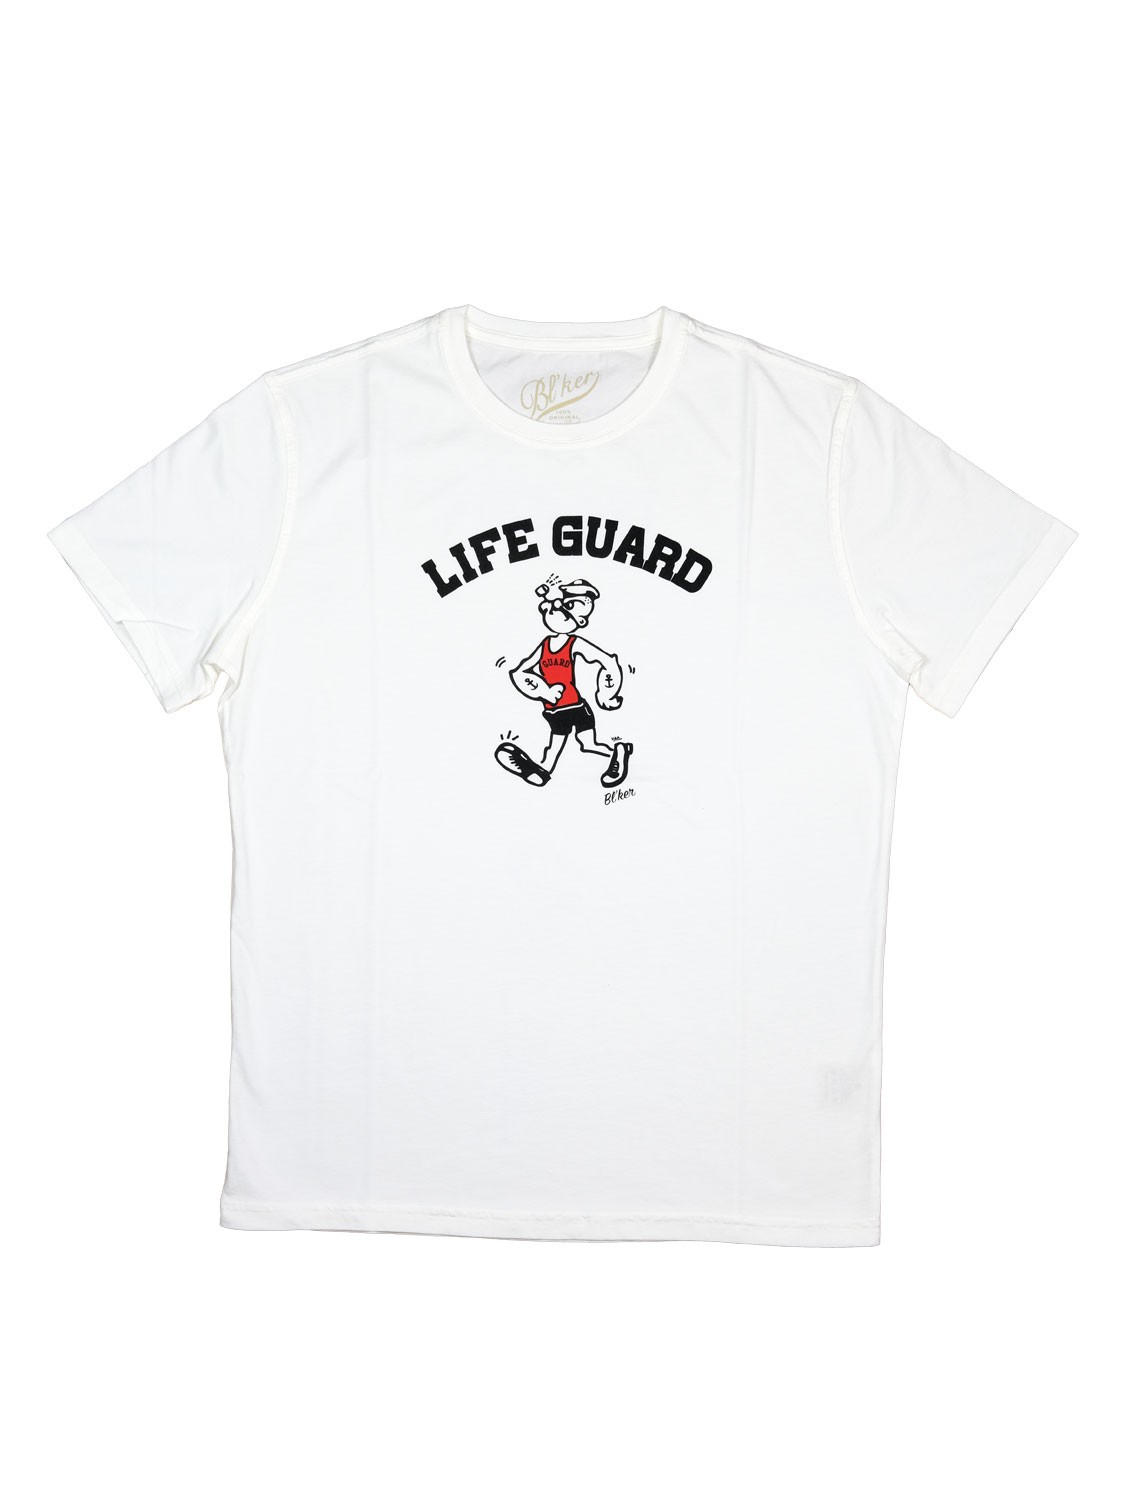 Bl'ker Men's T-shirt Graphic Life Guard